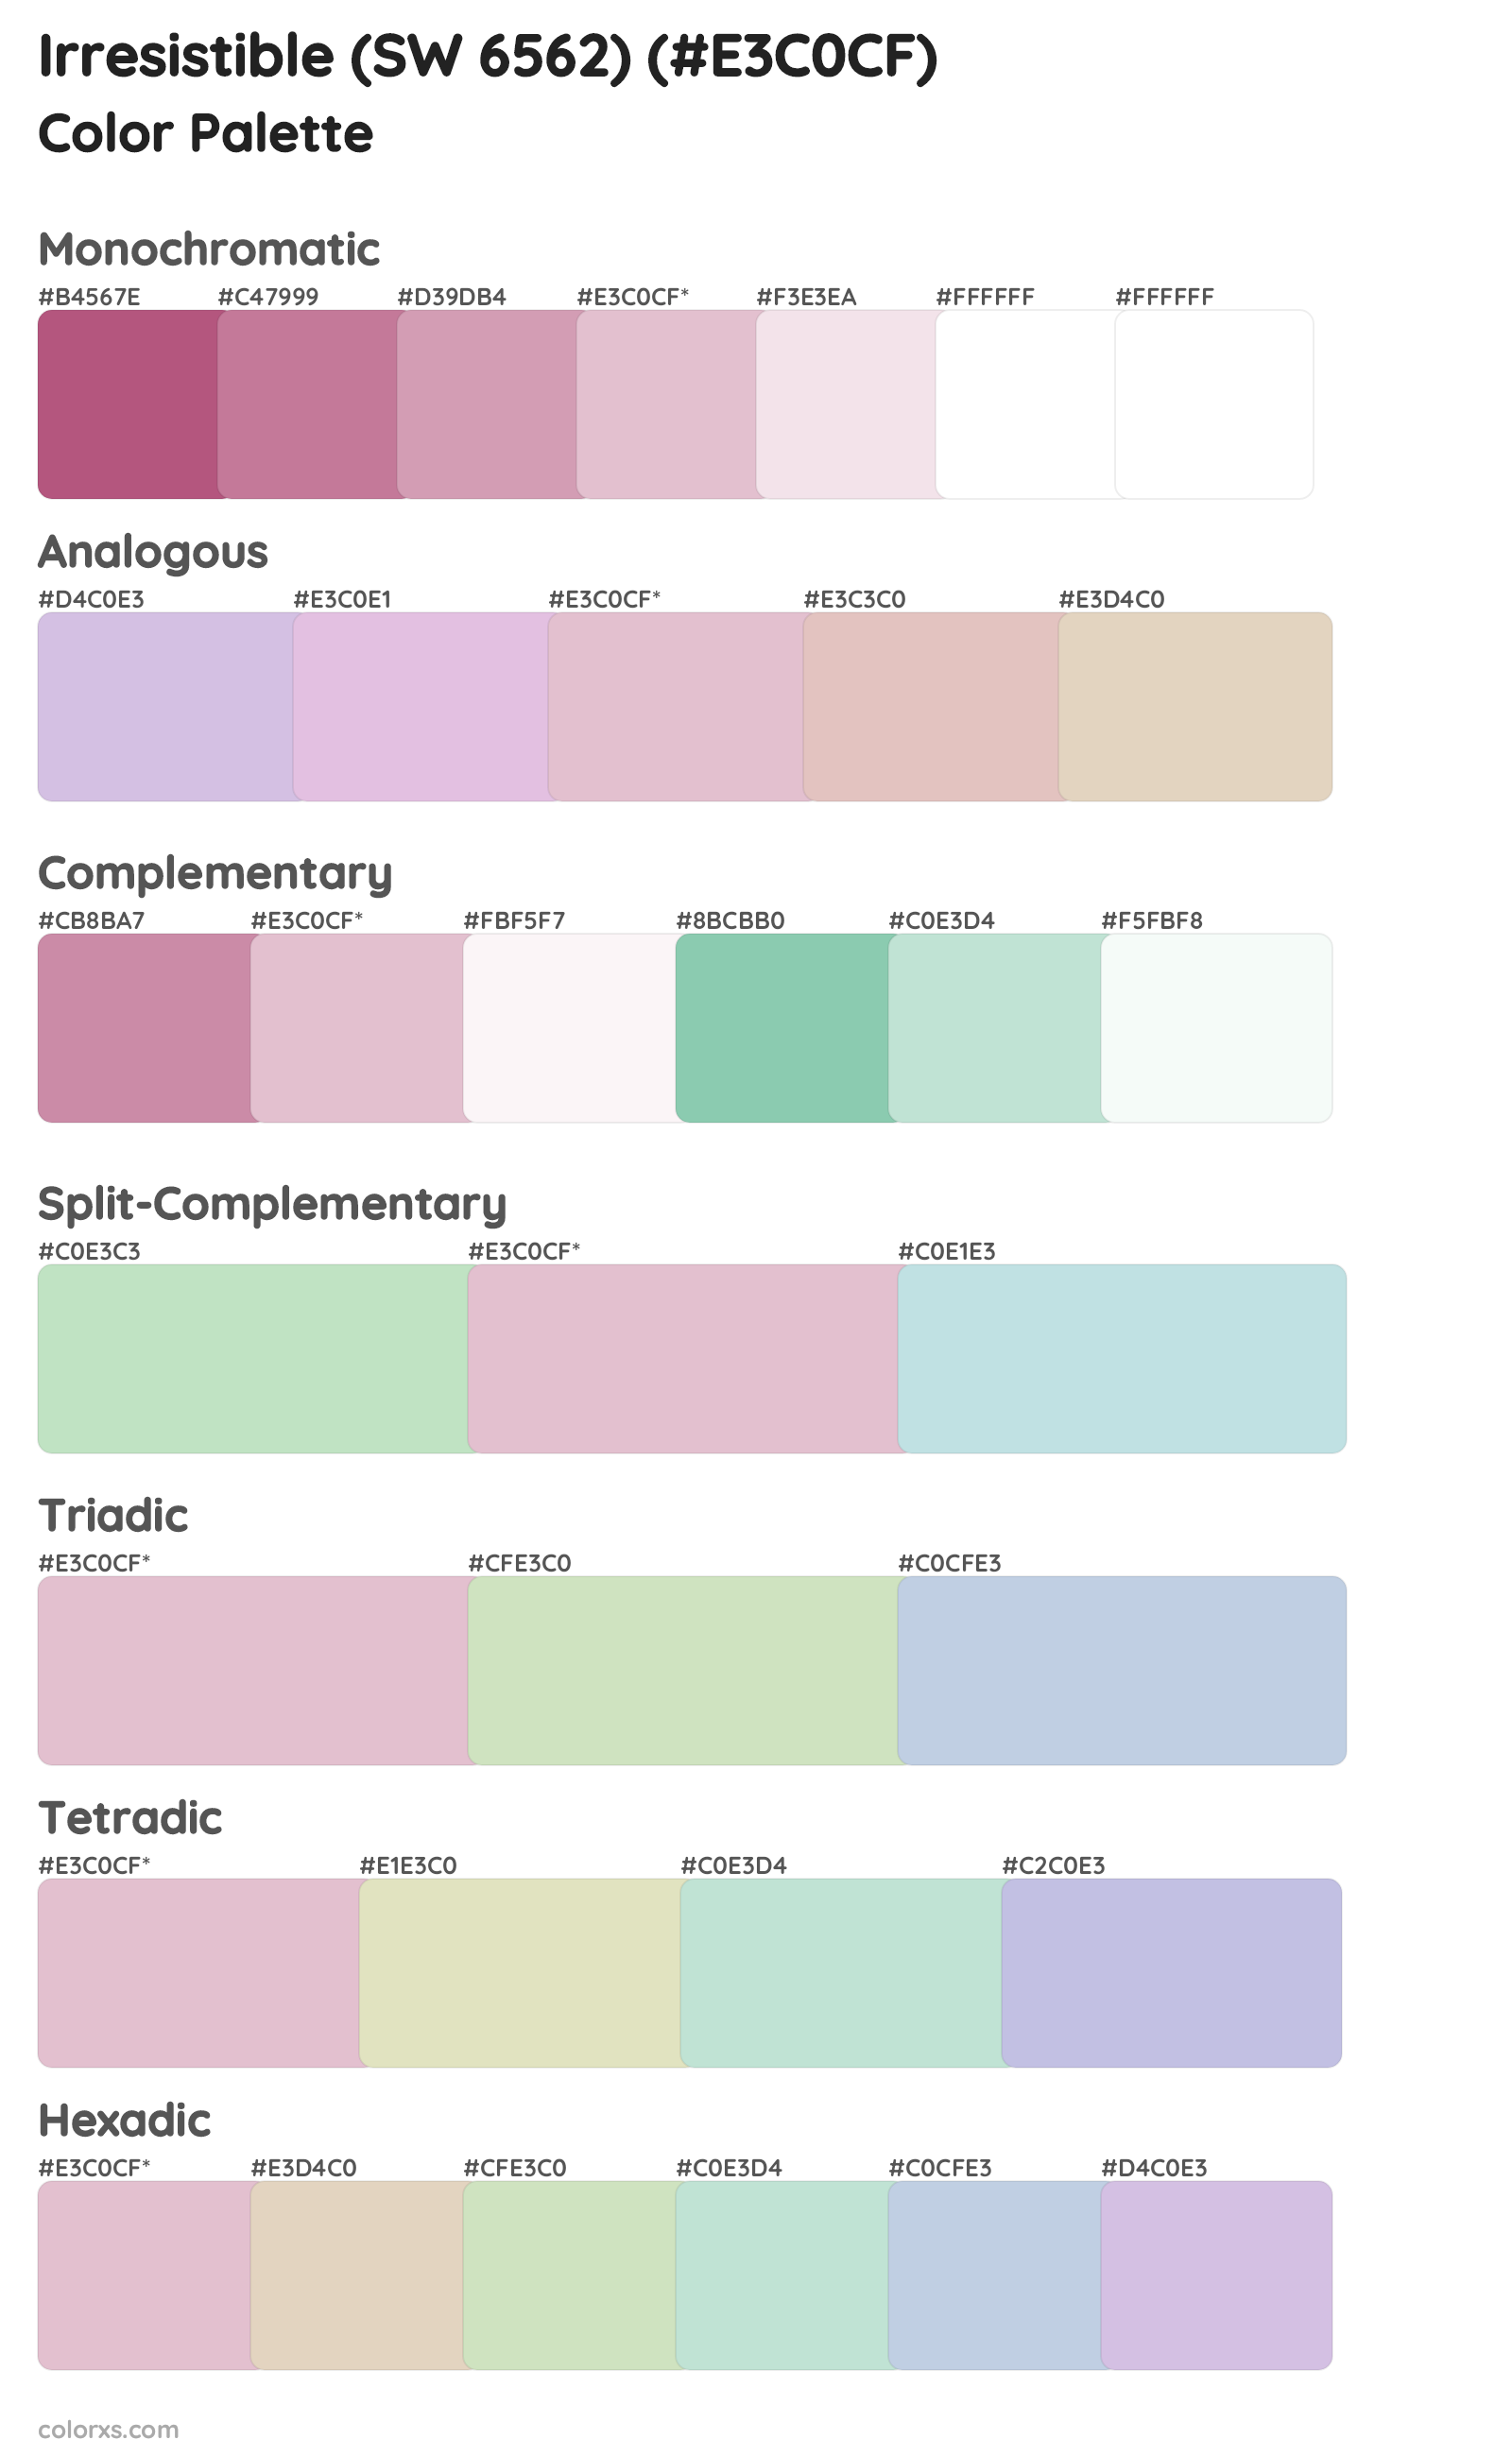 Irresistible (SW 6562) Color Scheme Palettes